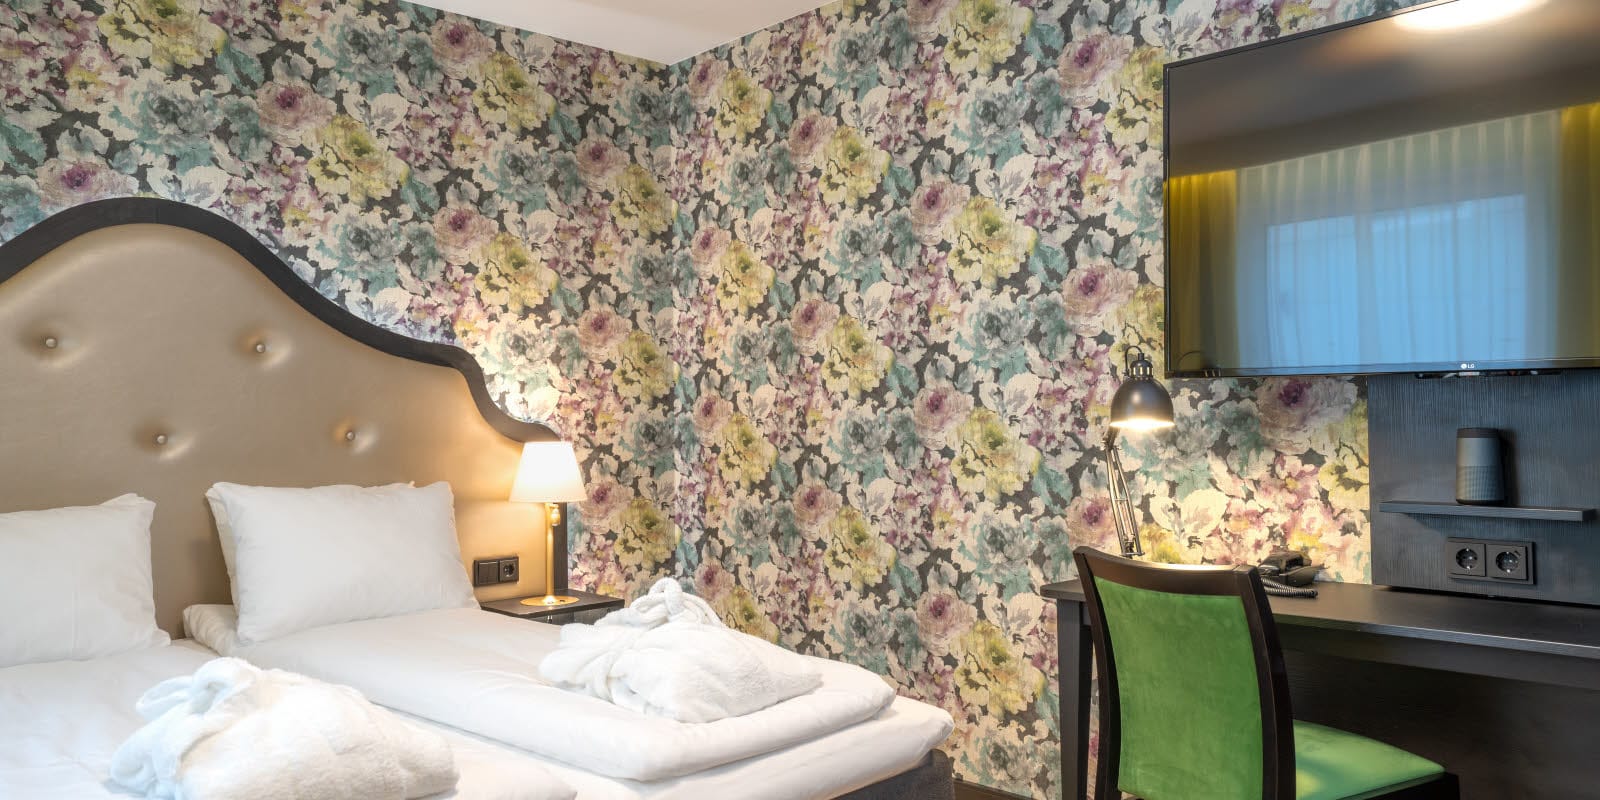 Blommig tapet och dubbelsäng, gula gardiner, tv och arbetsplats i dubbelrum på Thon Hotel Cecil i centrala Oslo